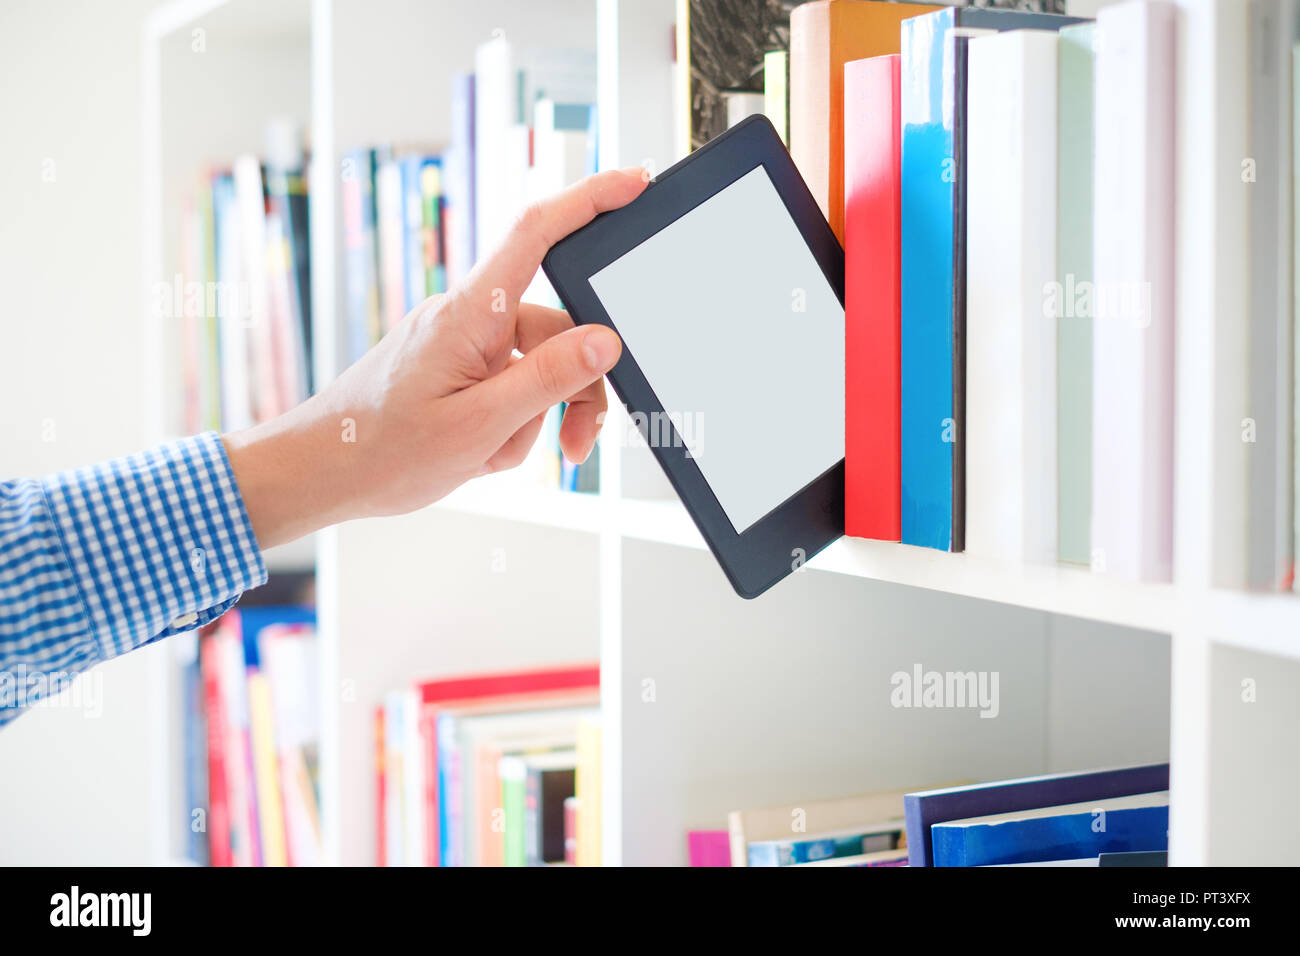 Manos sosteniendo ebook en estantería background.Copia espacio en pantalla tableta digital Foto de stock